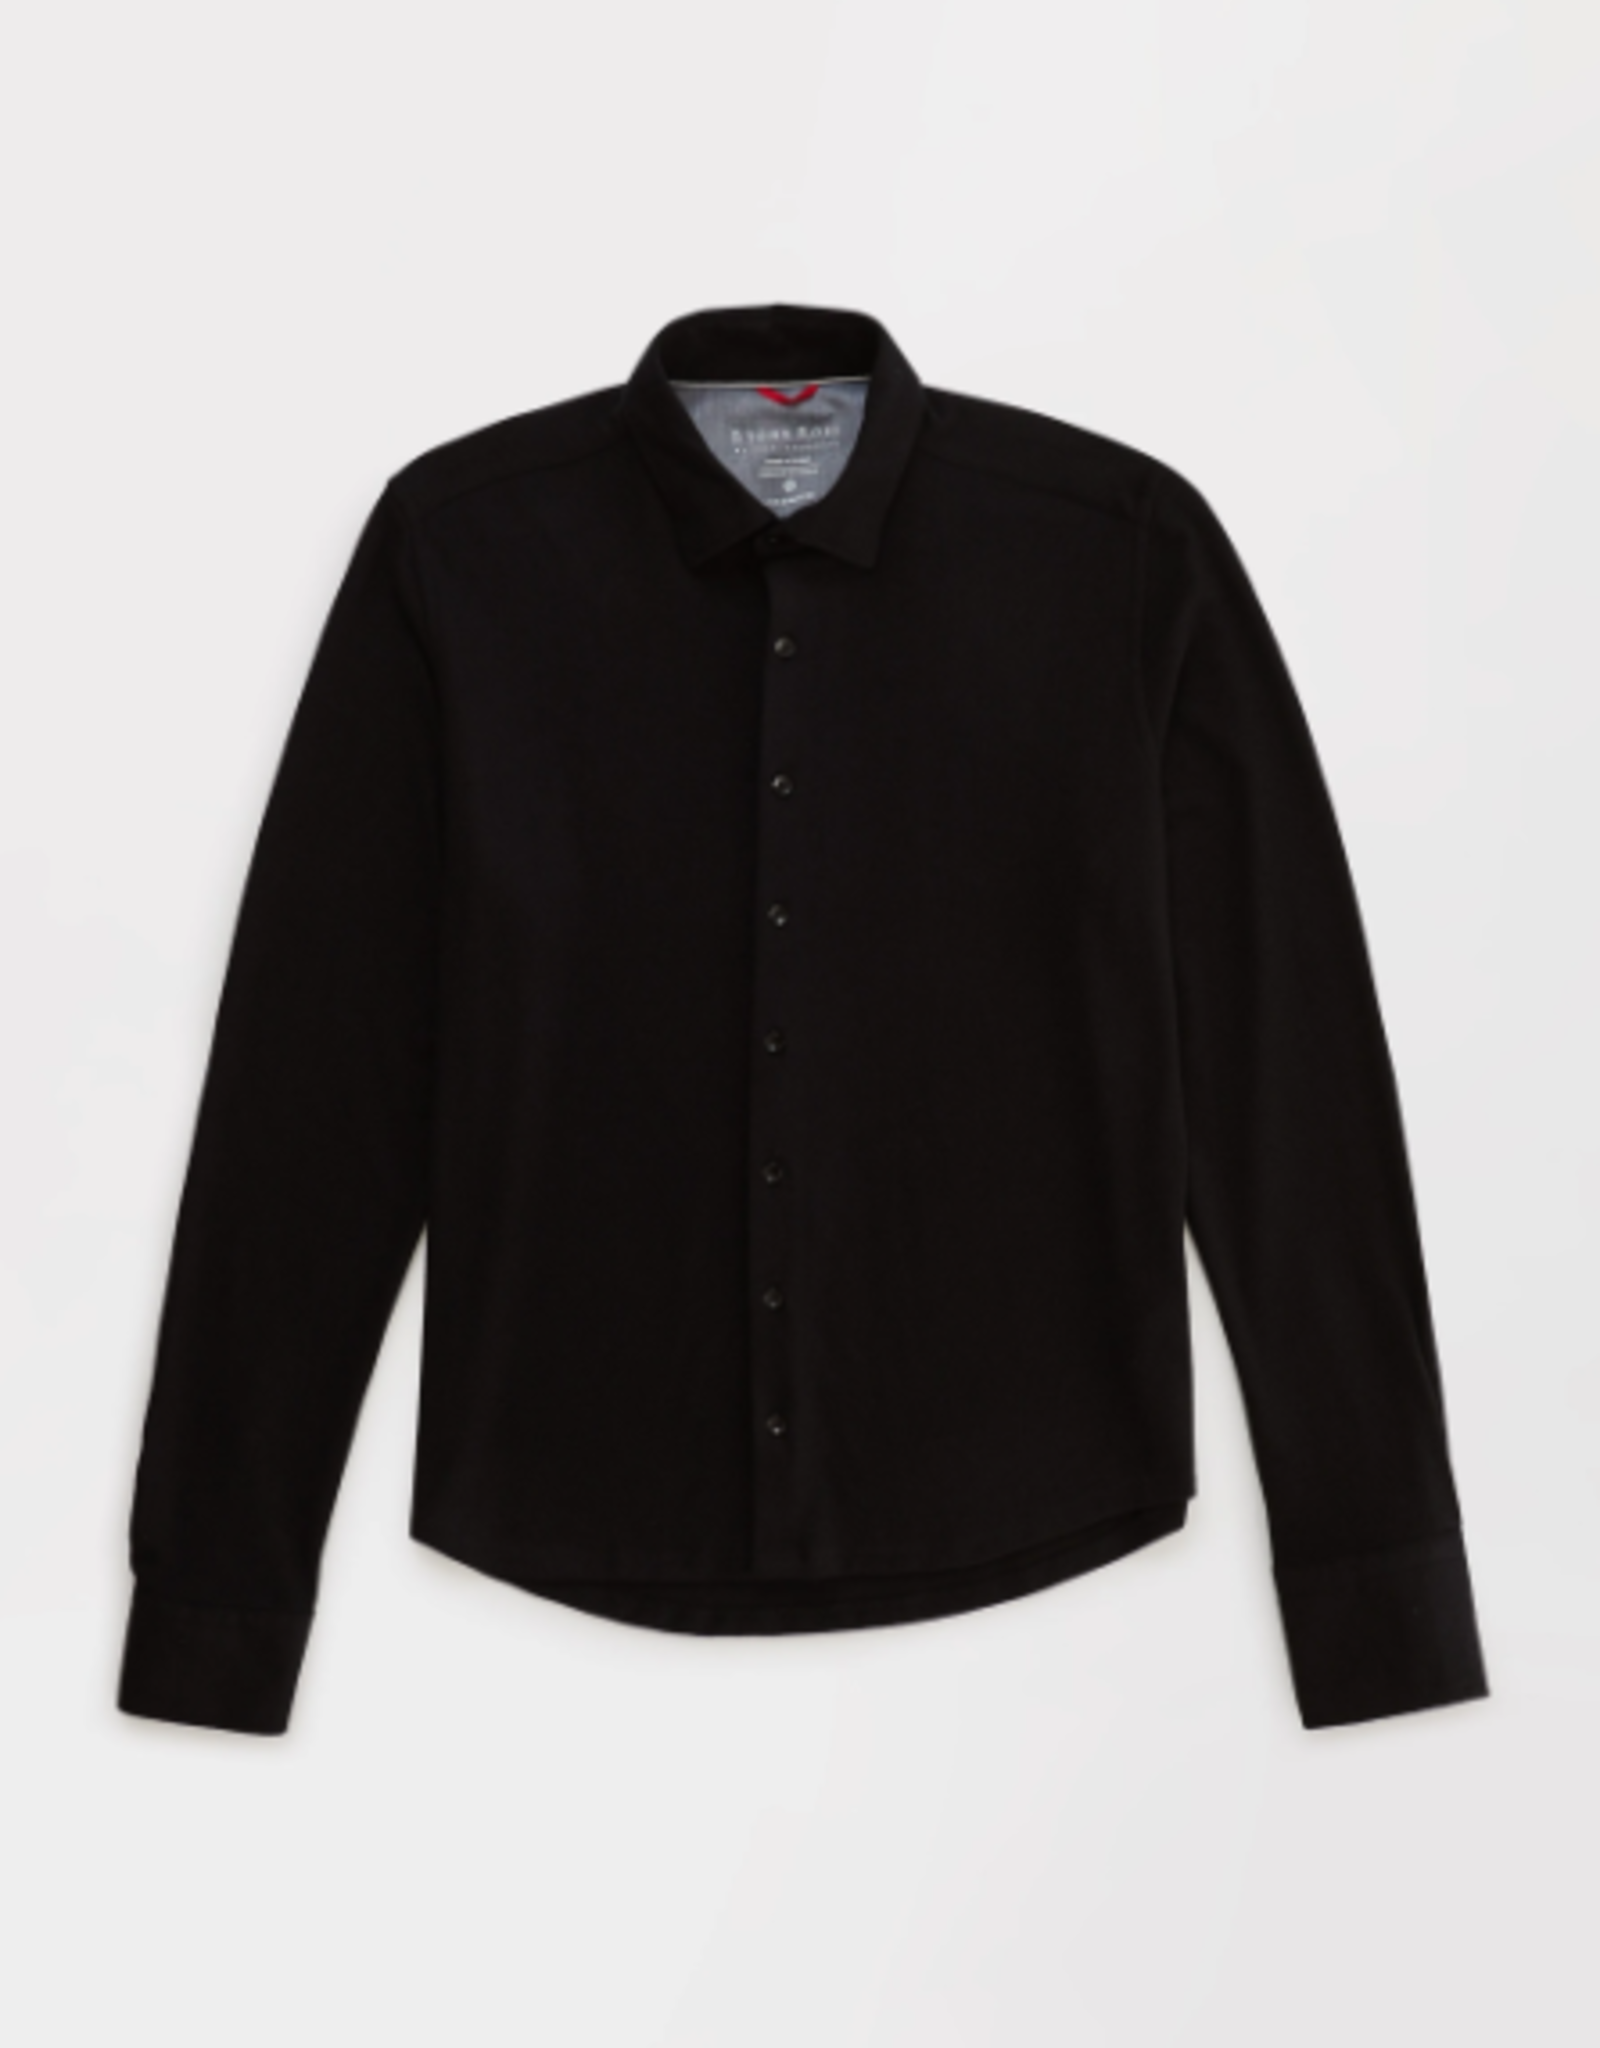 Long Sleeve Knit Black Solid Jersey Fleece